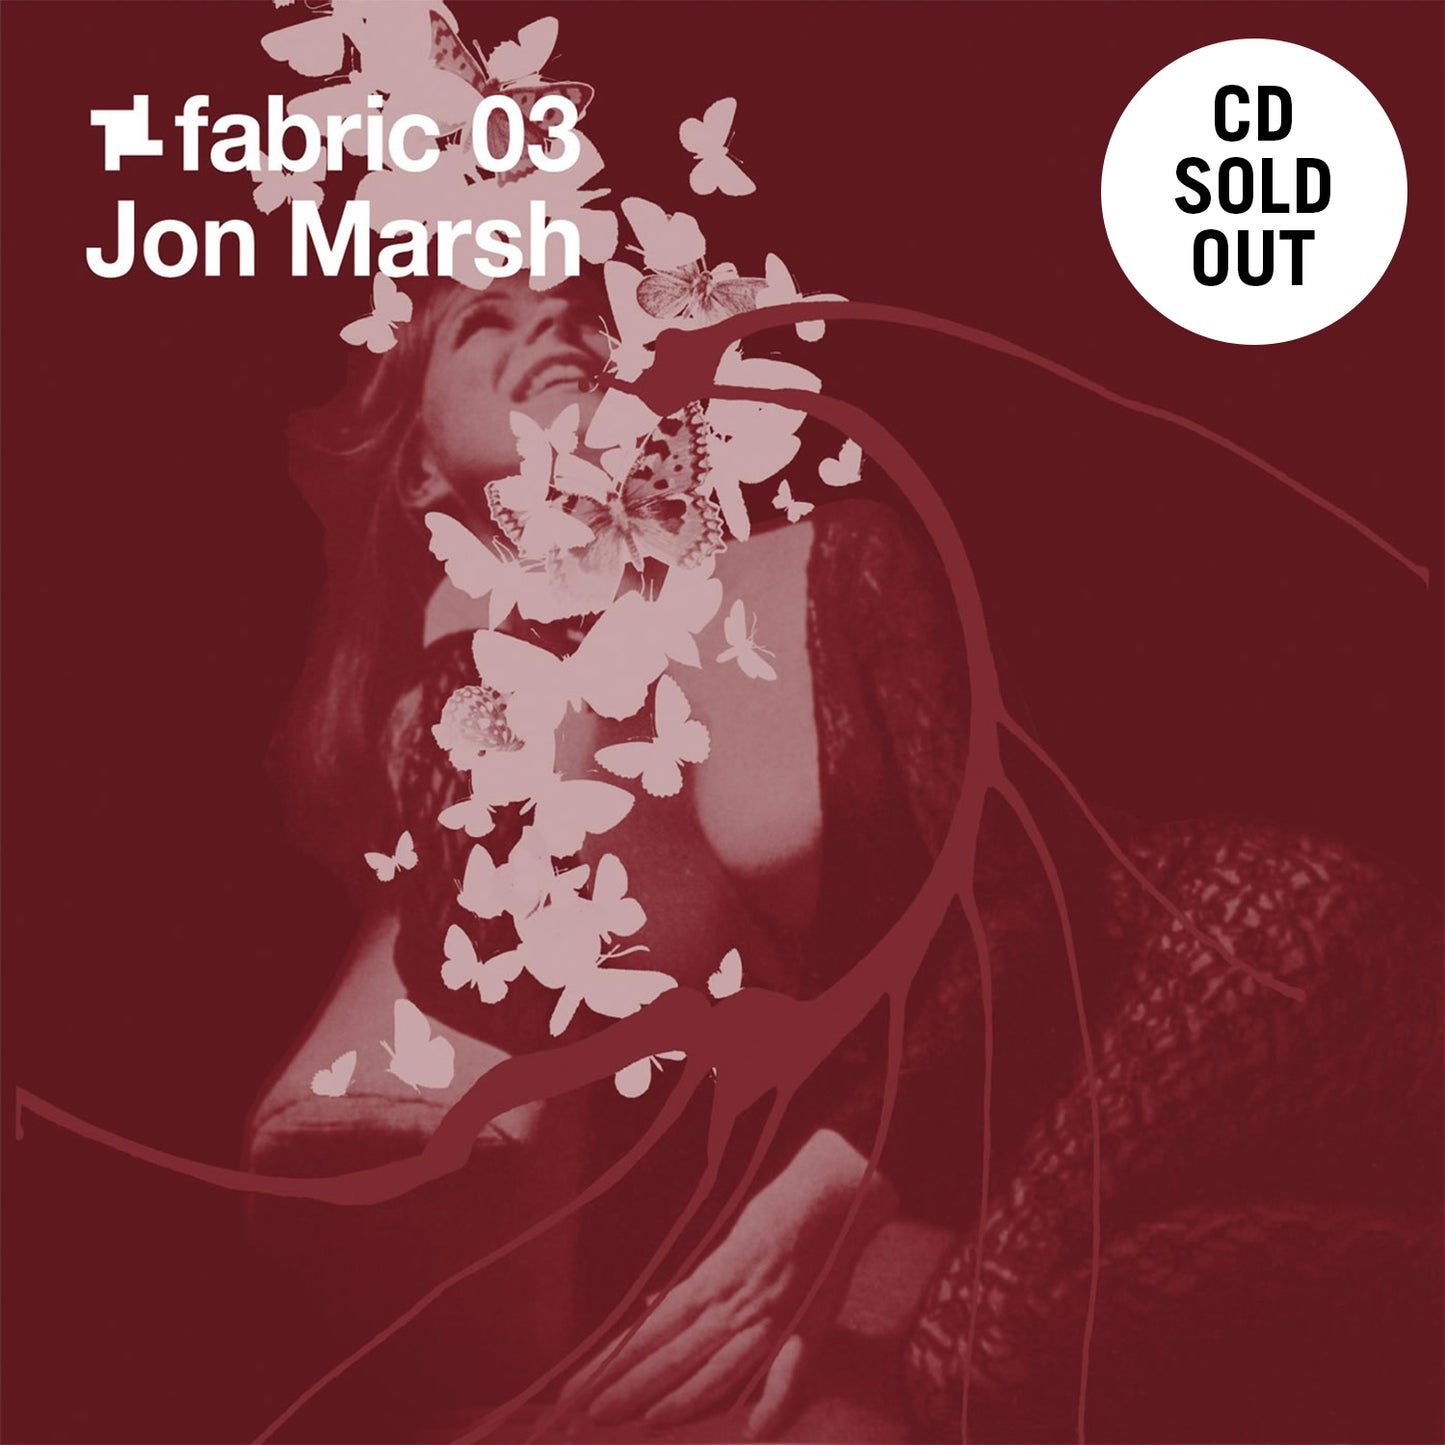 Jon Marsh - fabric 03 CD